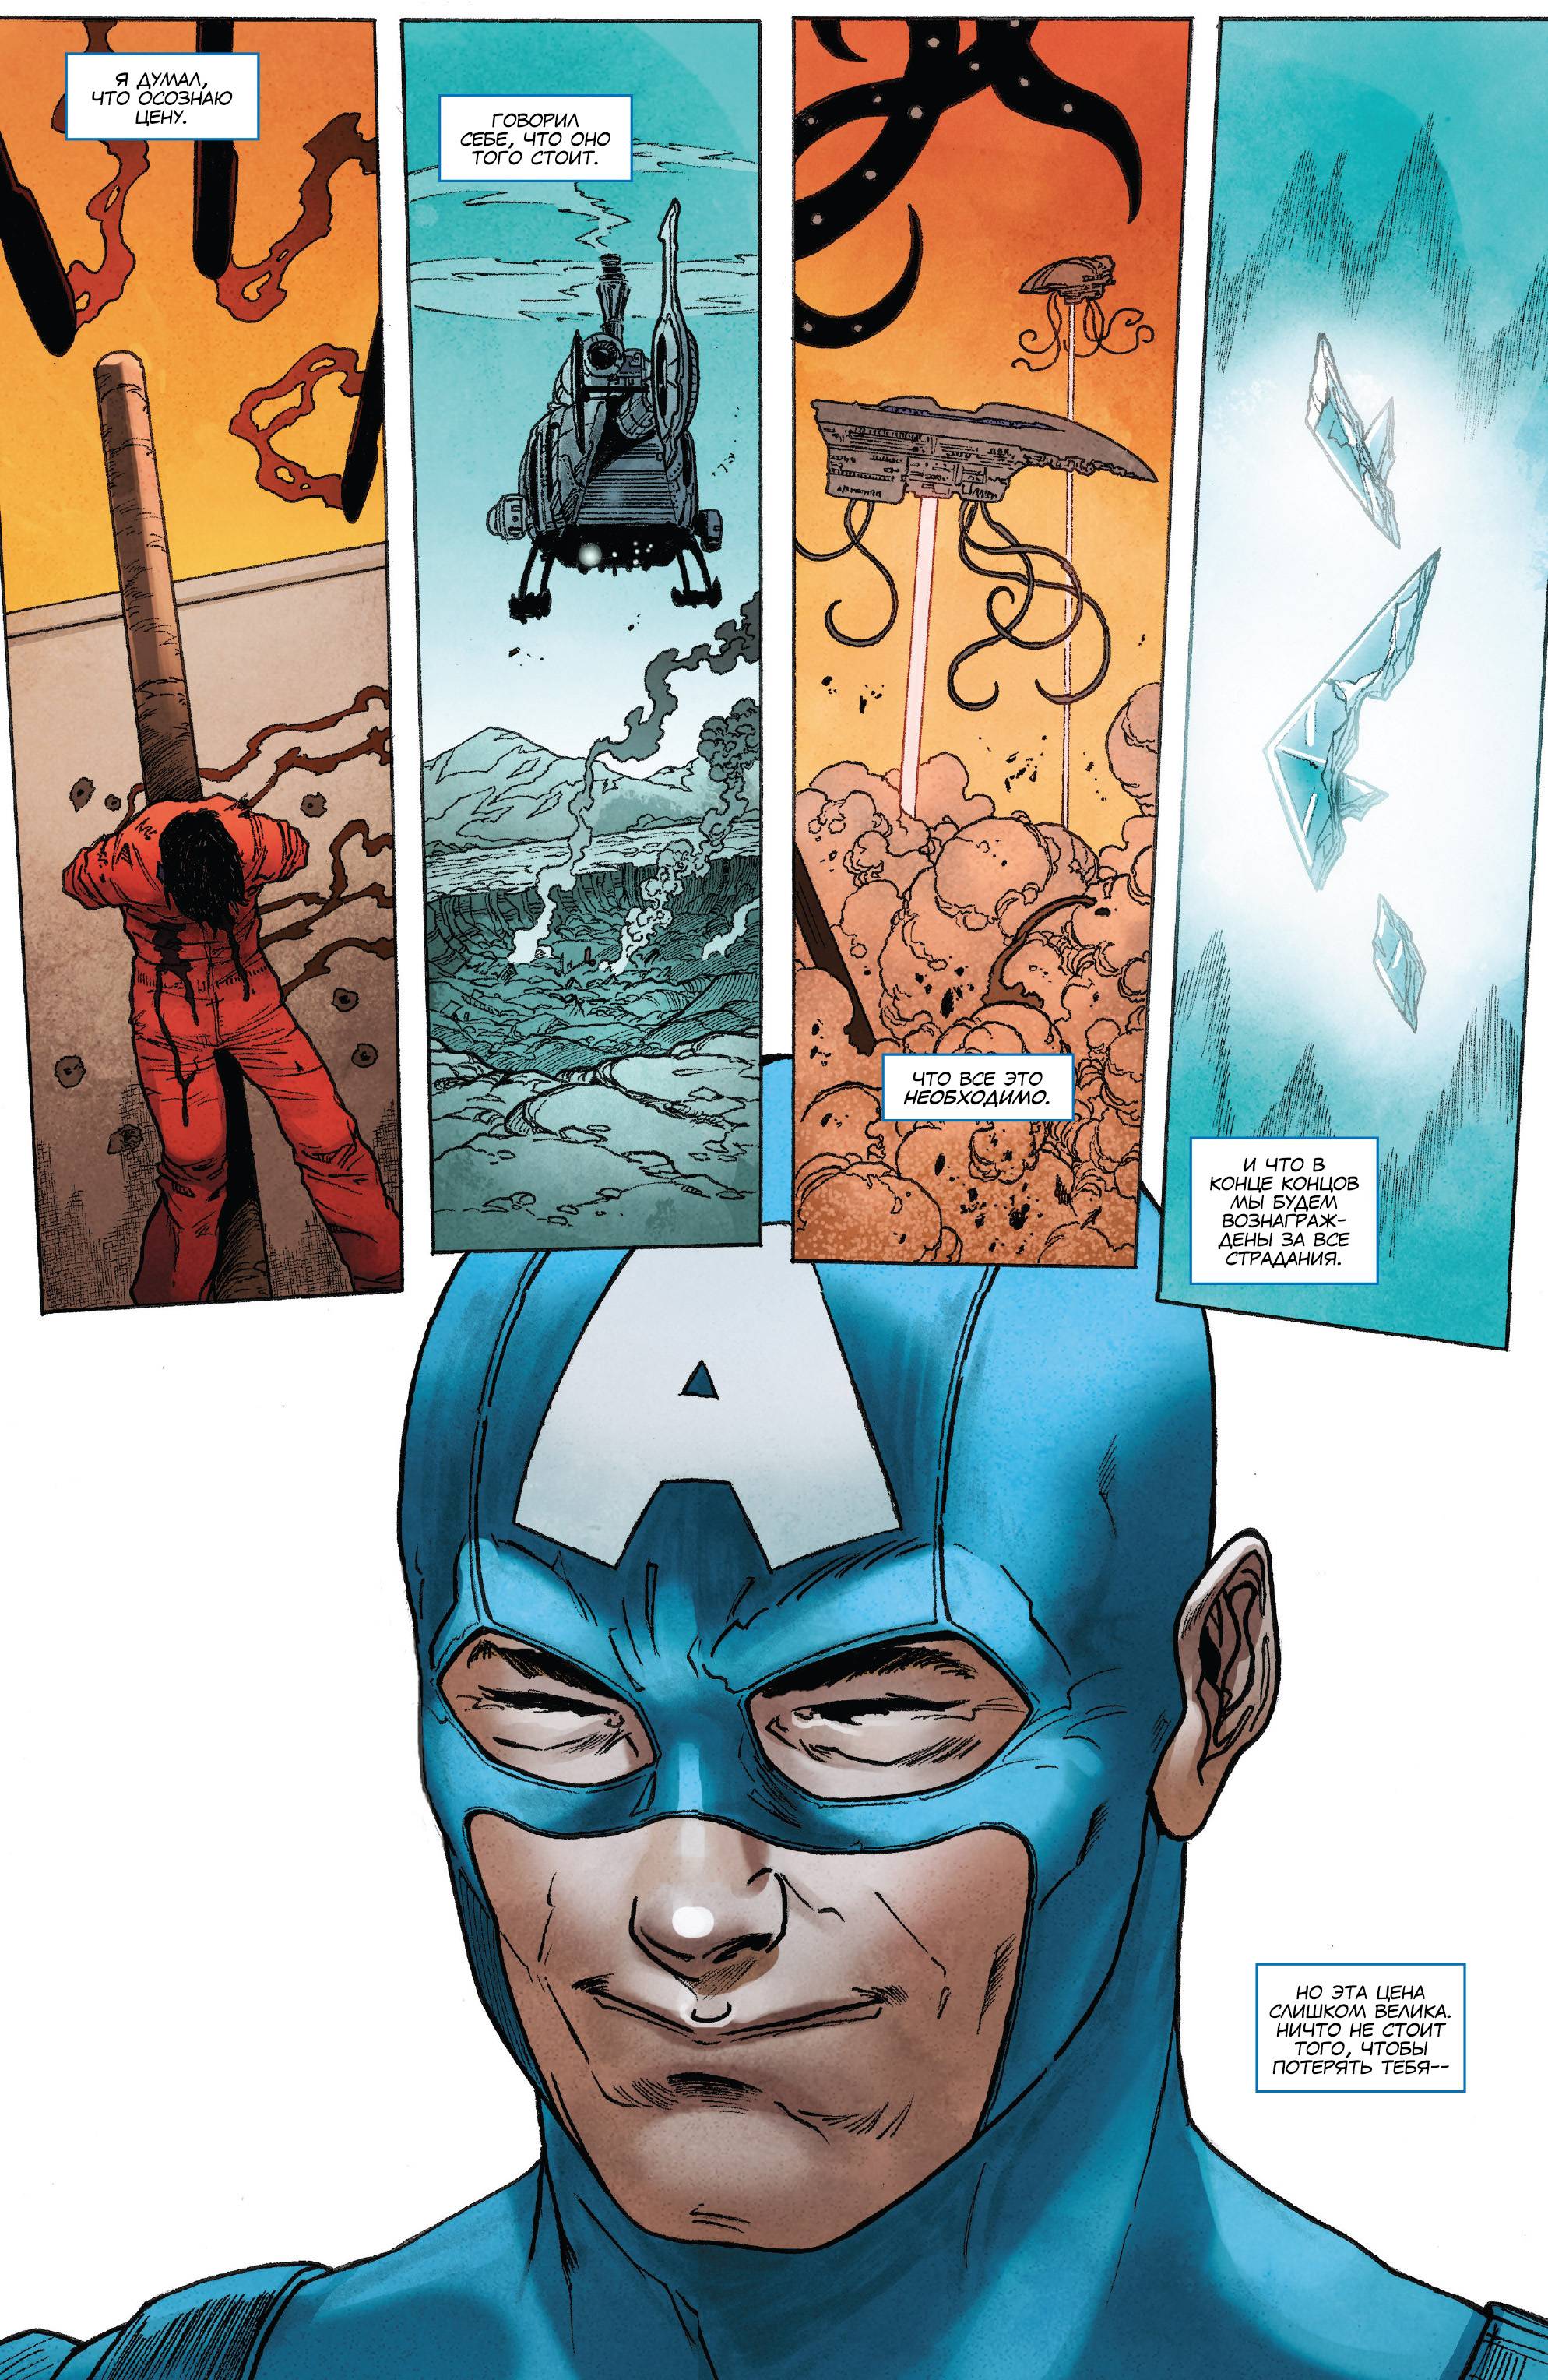 Капитан Америка: Стив Роджерс №19 онлайн